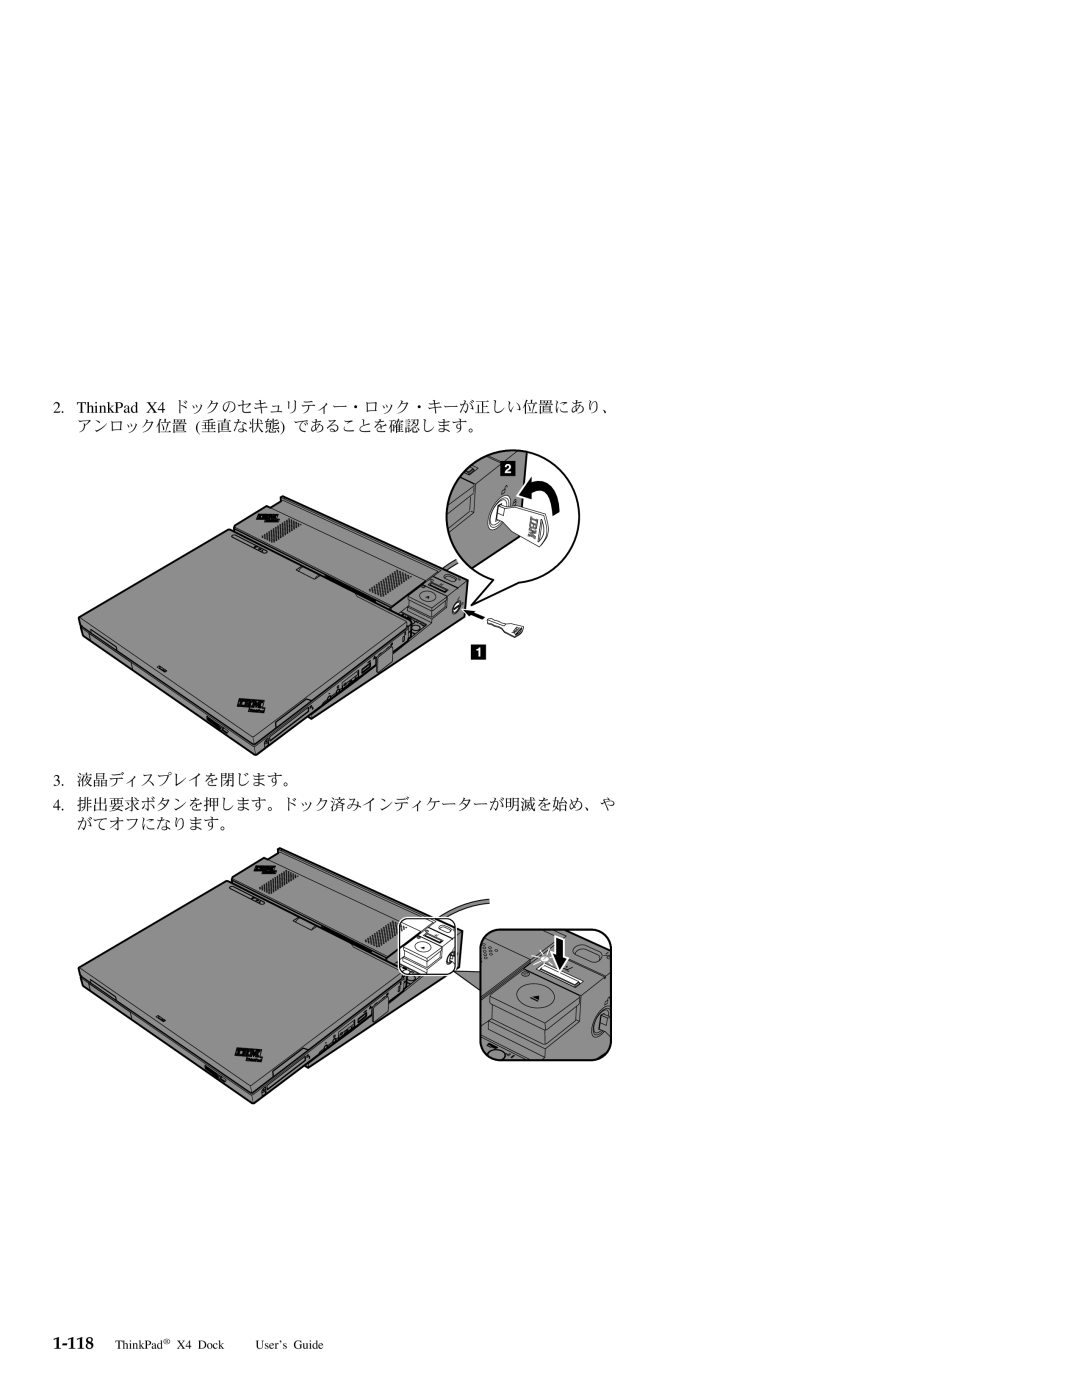 IBM manual 3. 液晶ディスプレイを閉じます。 4. 排出要求ボタンを押します。ドック済みインディケーターが明滅を始め、や がてオフになります。, ThinkPad X4 Dock, User’s Guide 